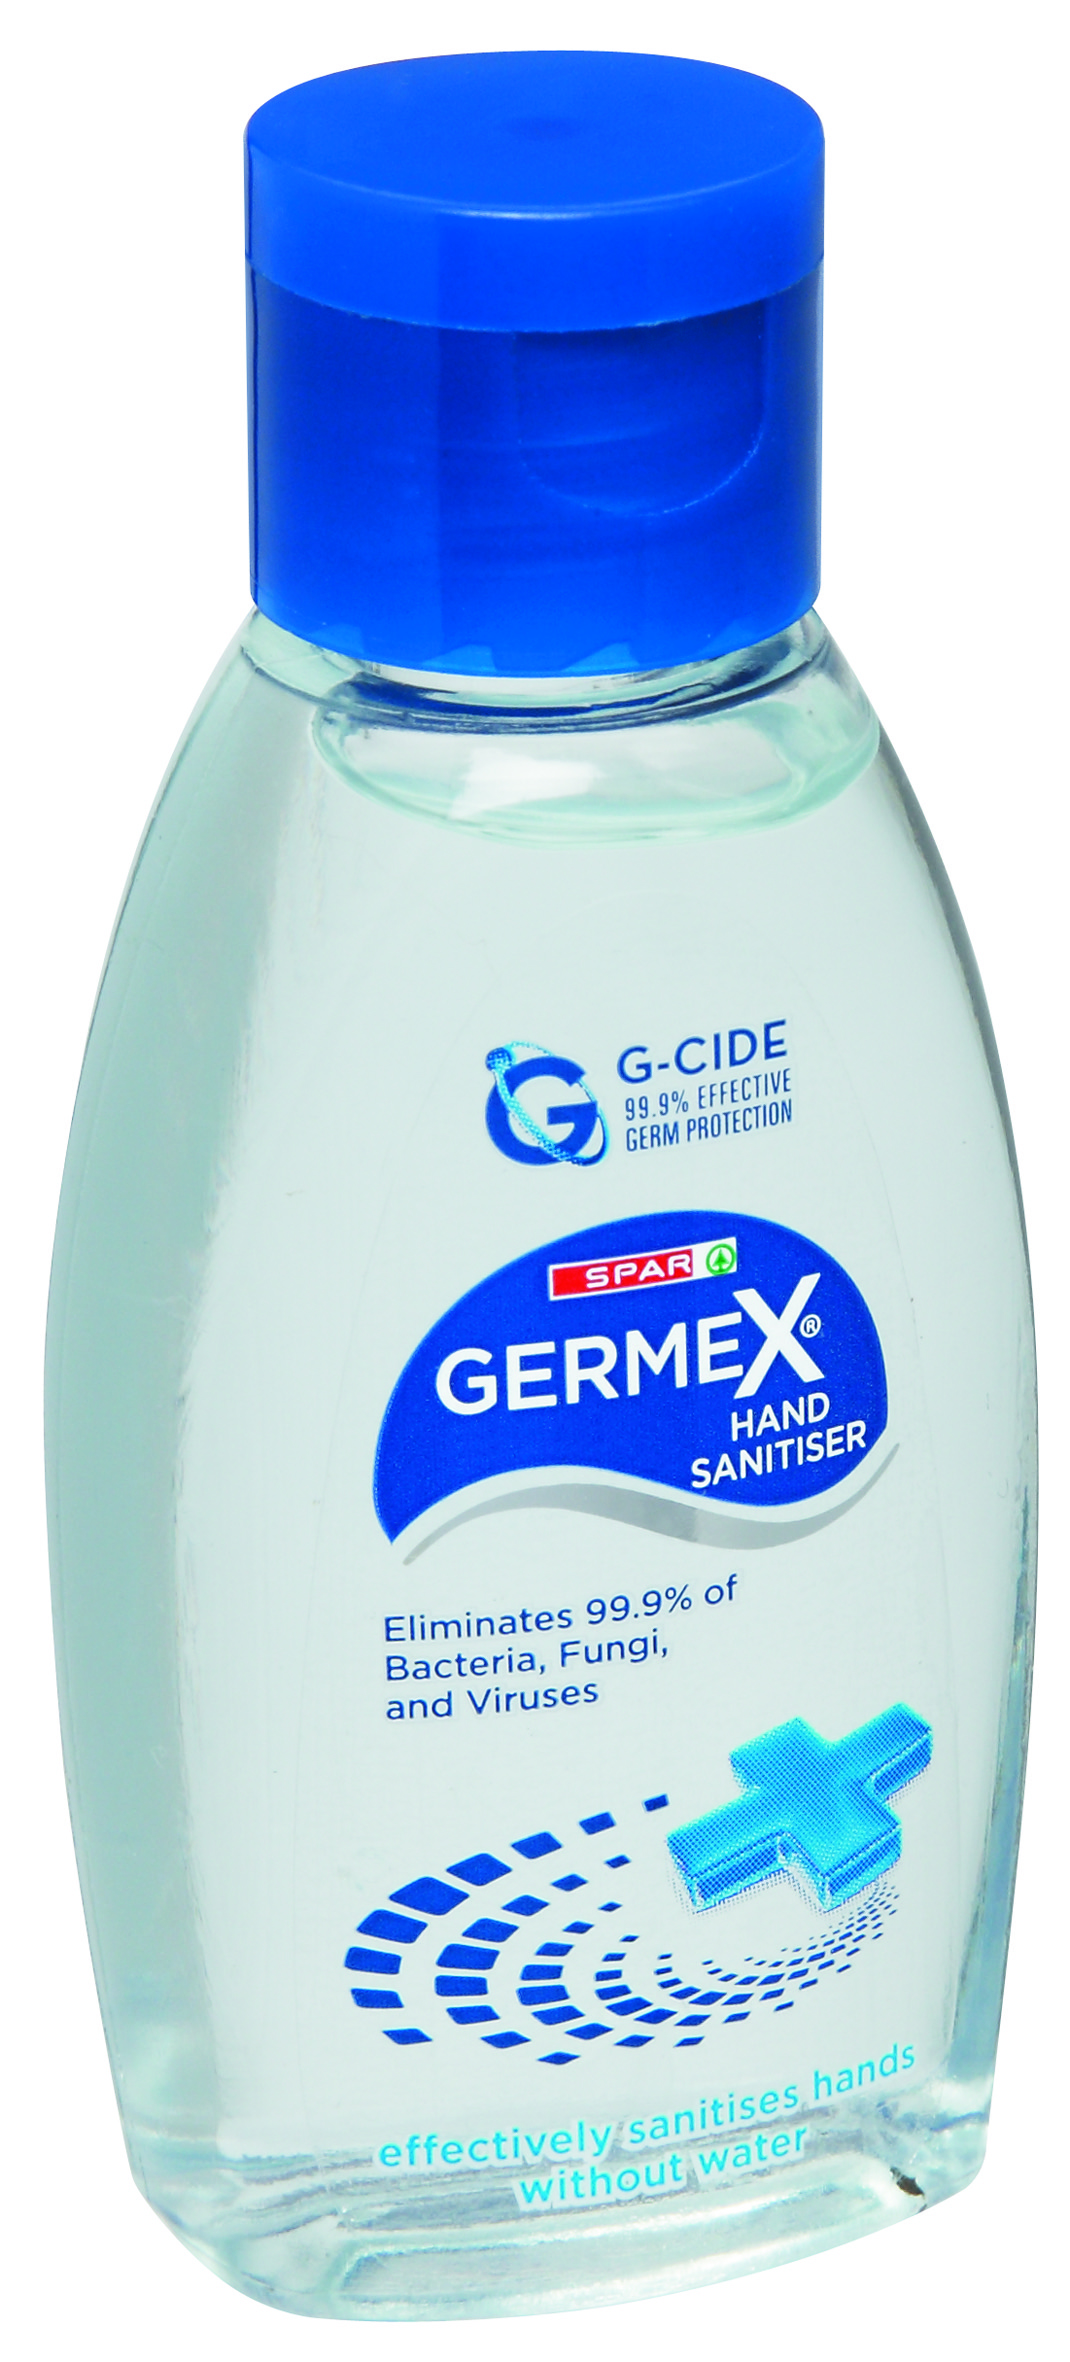 germex hand sanitizer